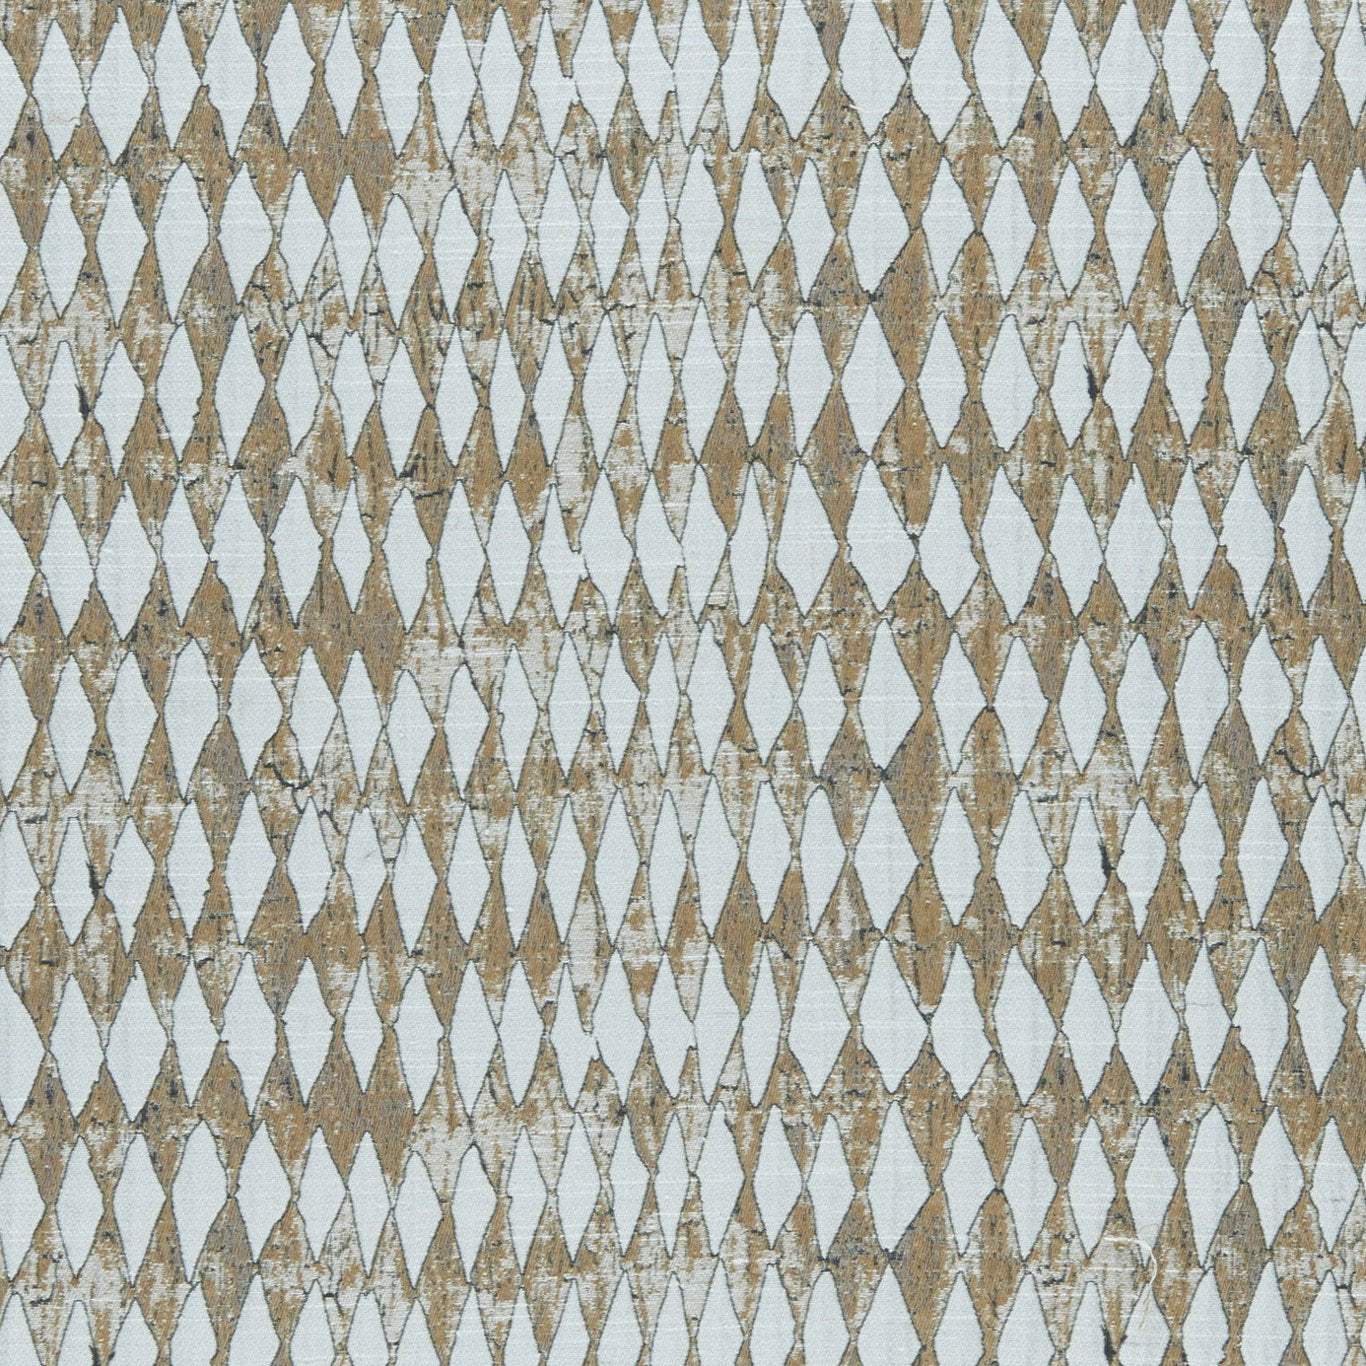 Amara Fabric by Clarke & Clarke - F0953/01 - Cinnamon